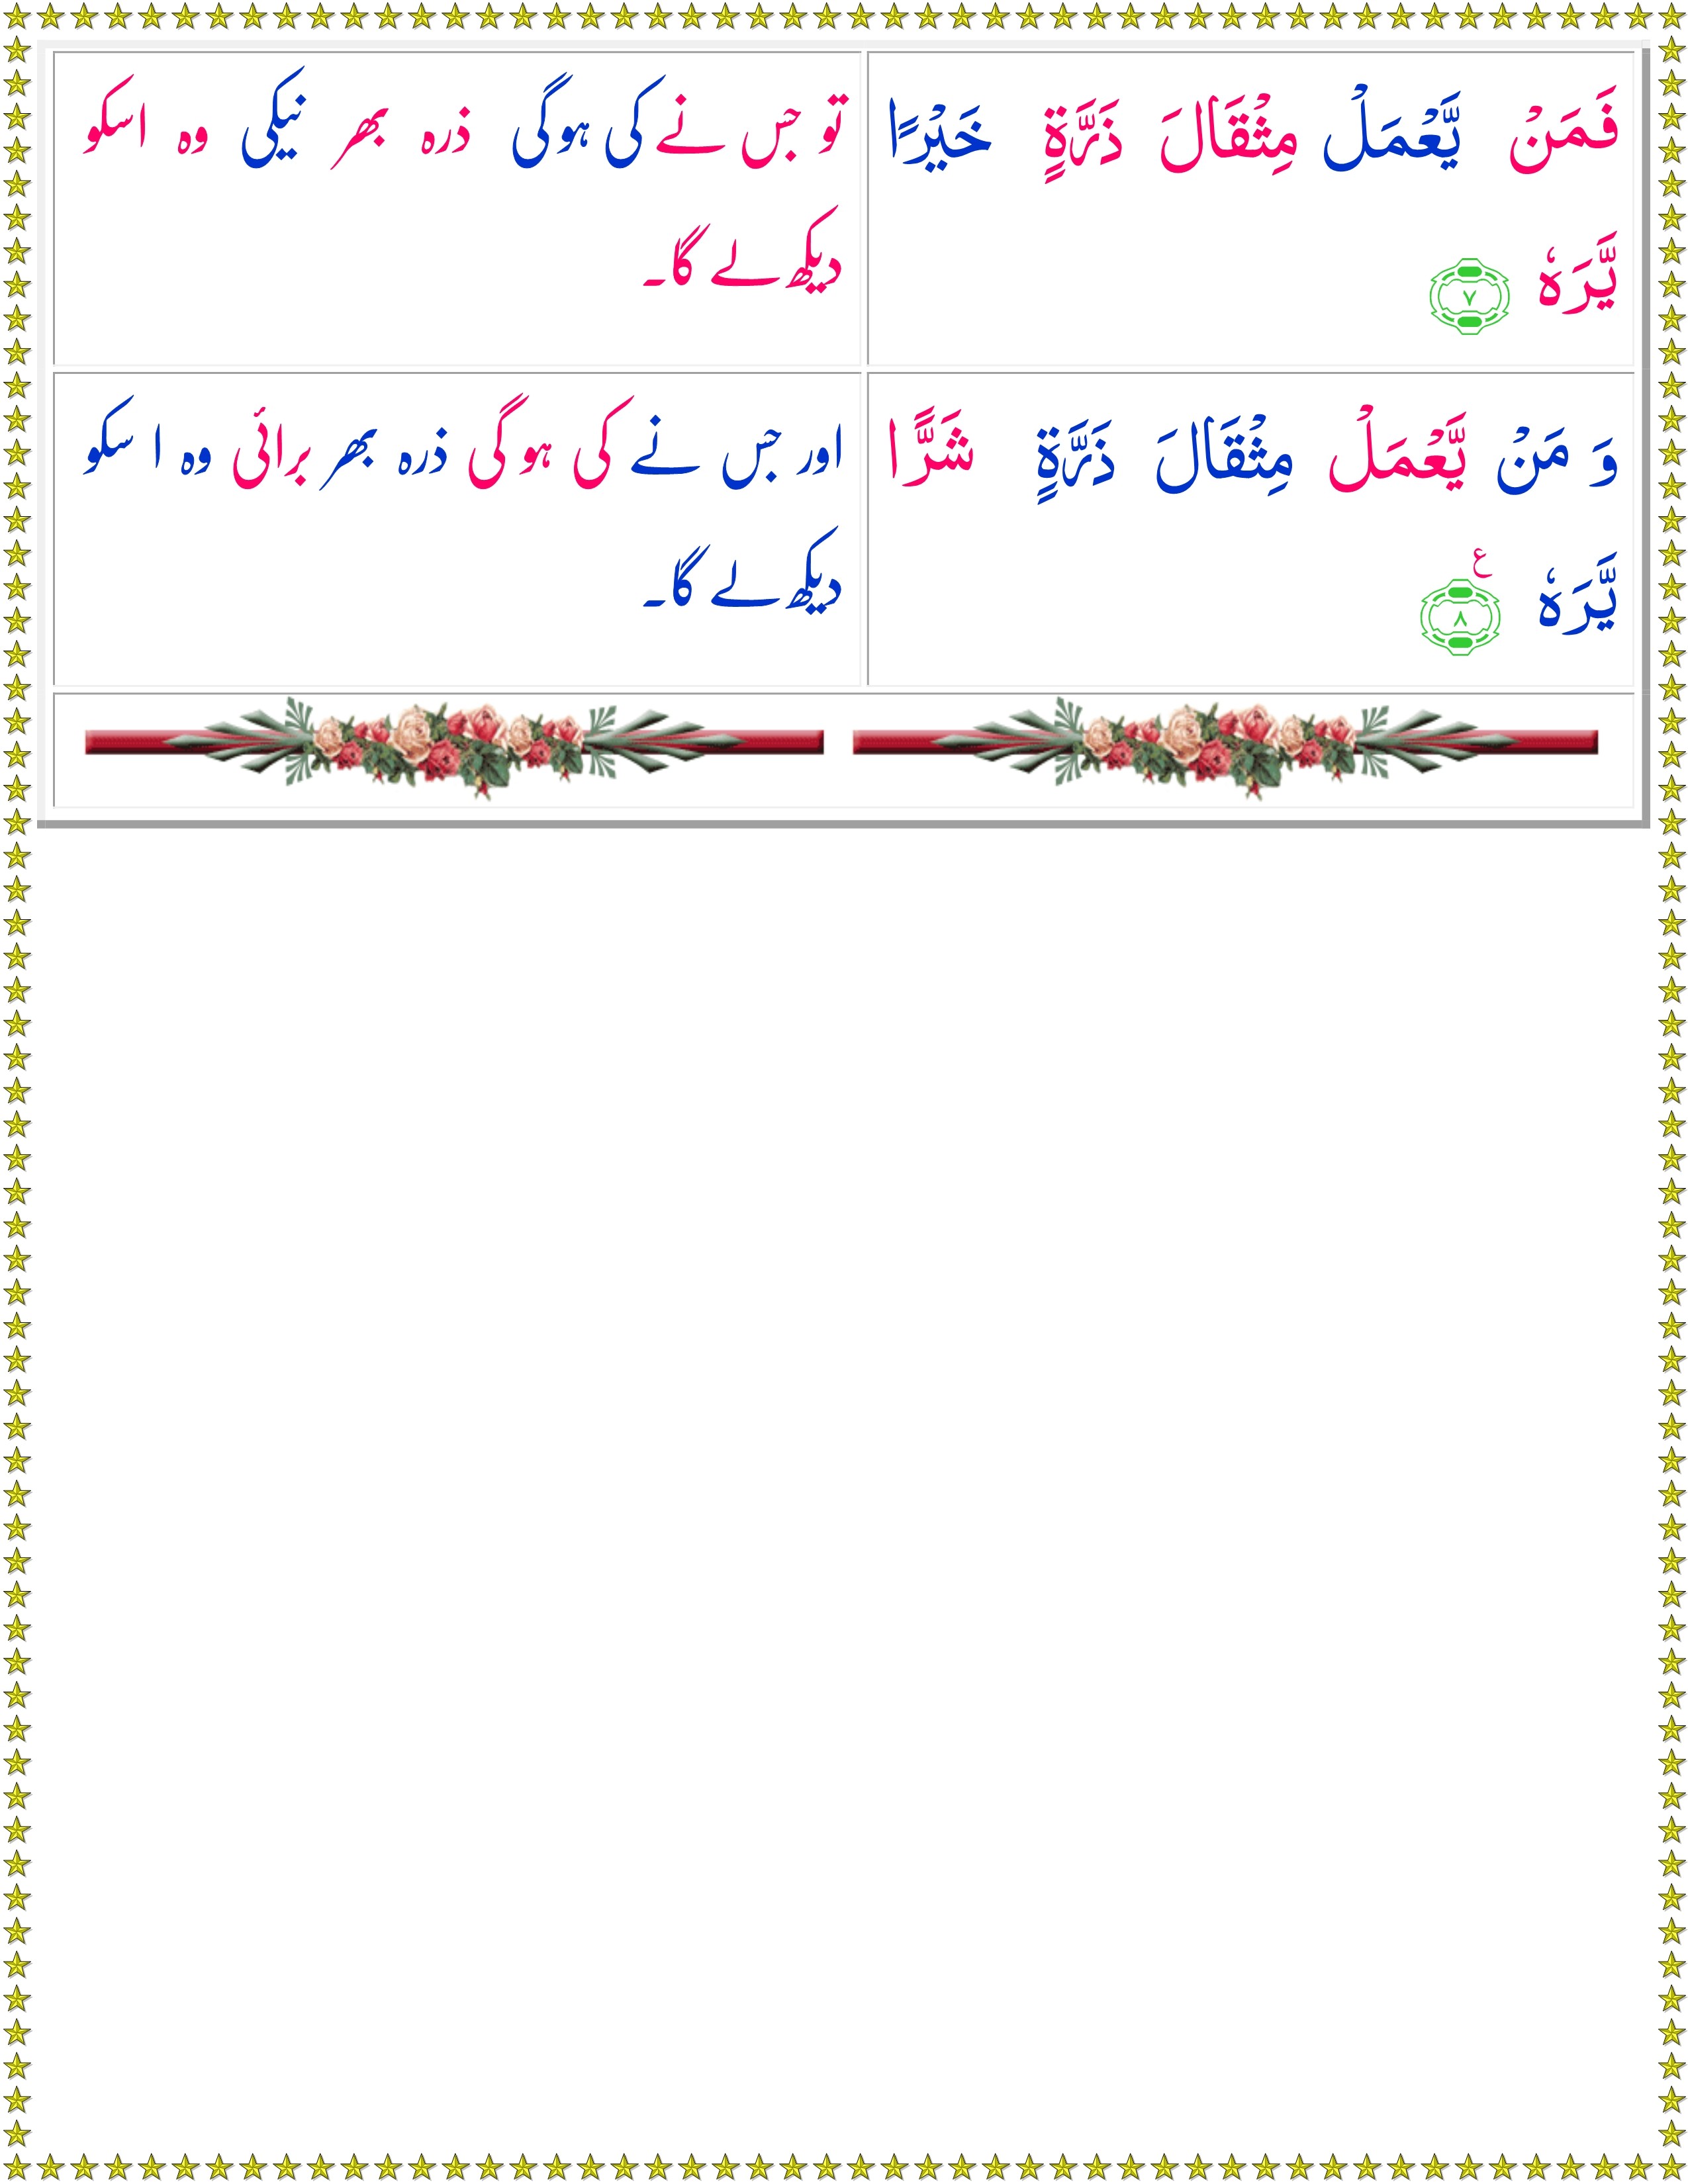 Surah Al-Zalzalah (Urdu) - Quran o Sunnat